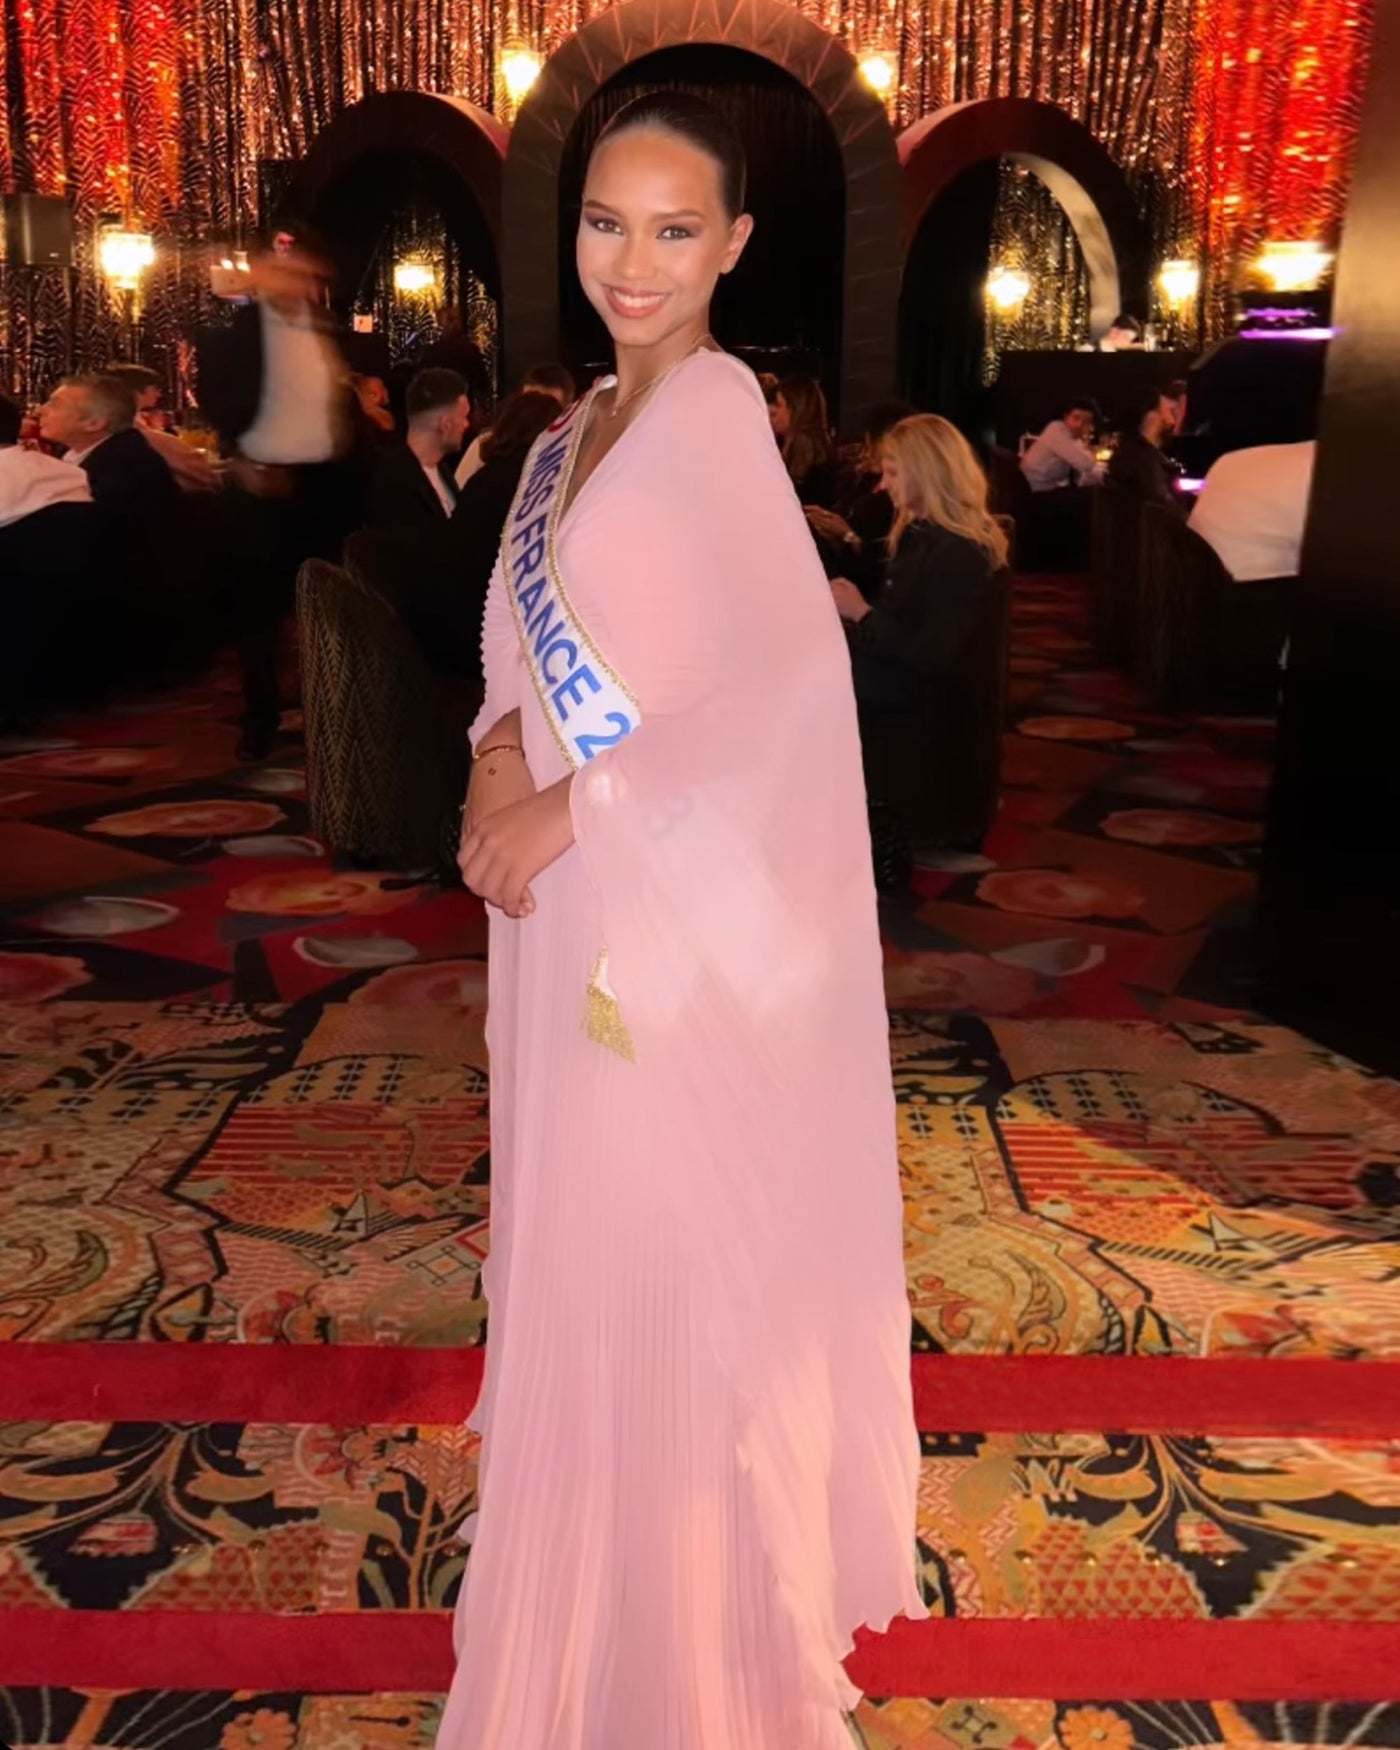 Miss France At The Séminaire Annuel Des Délégués Régionaux